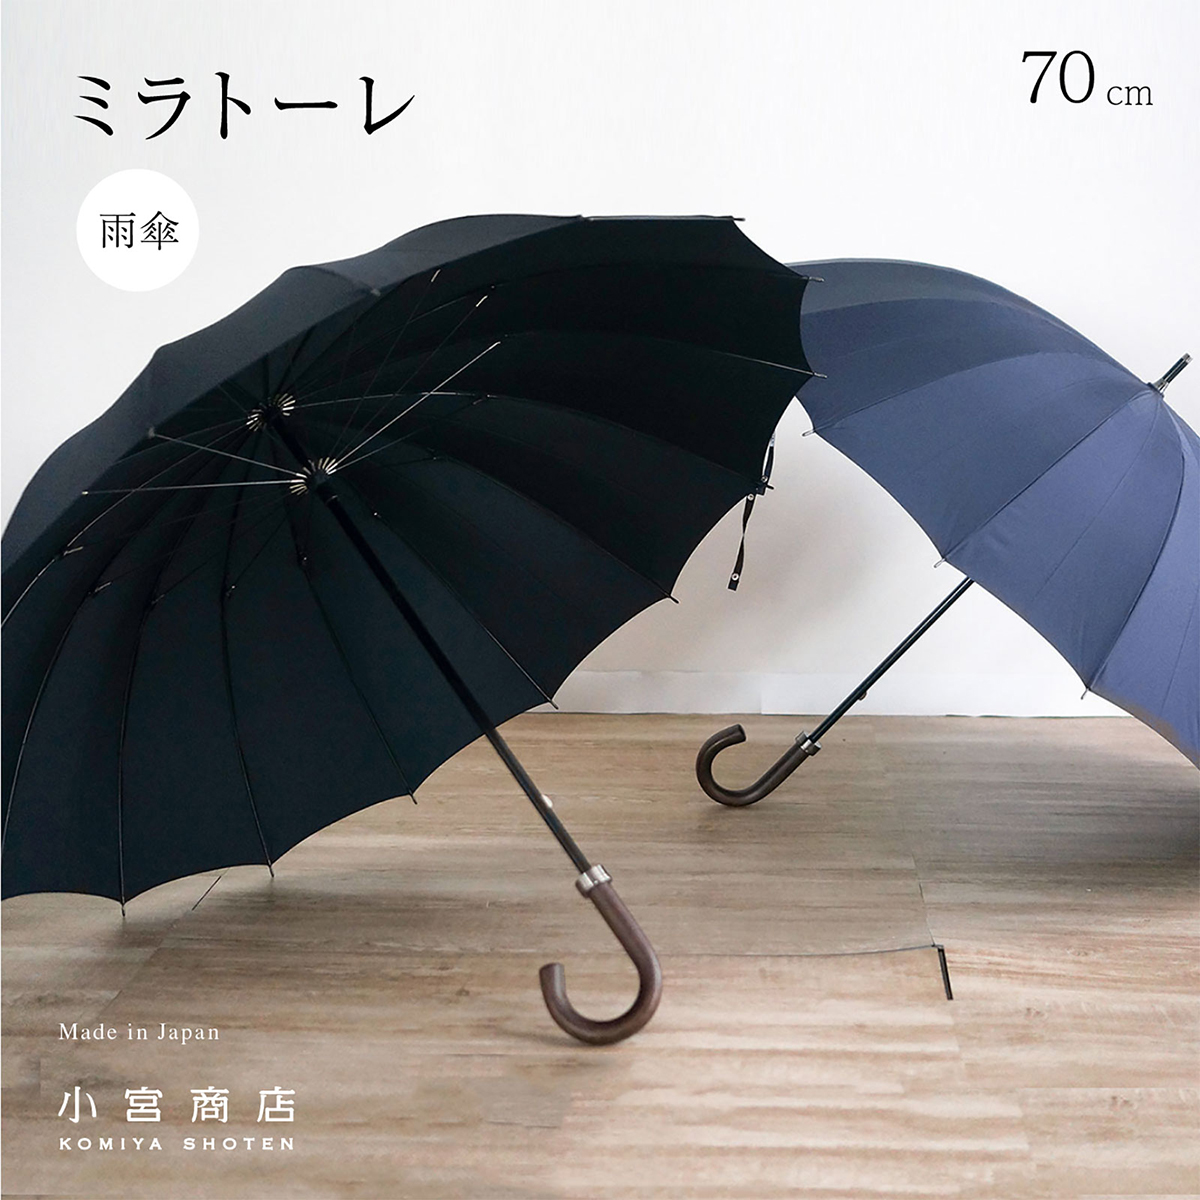 日本製【Tie】先染め高級傘 65cmメンズ雨傘 Stripe×Plain GREEN×NAVY